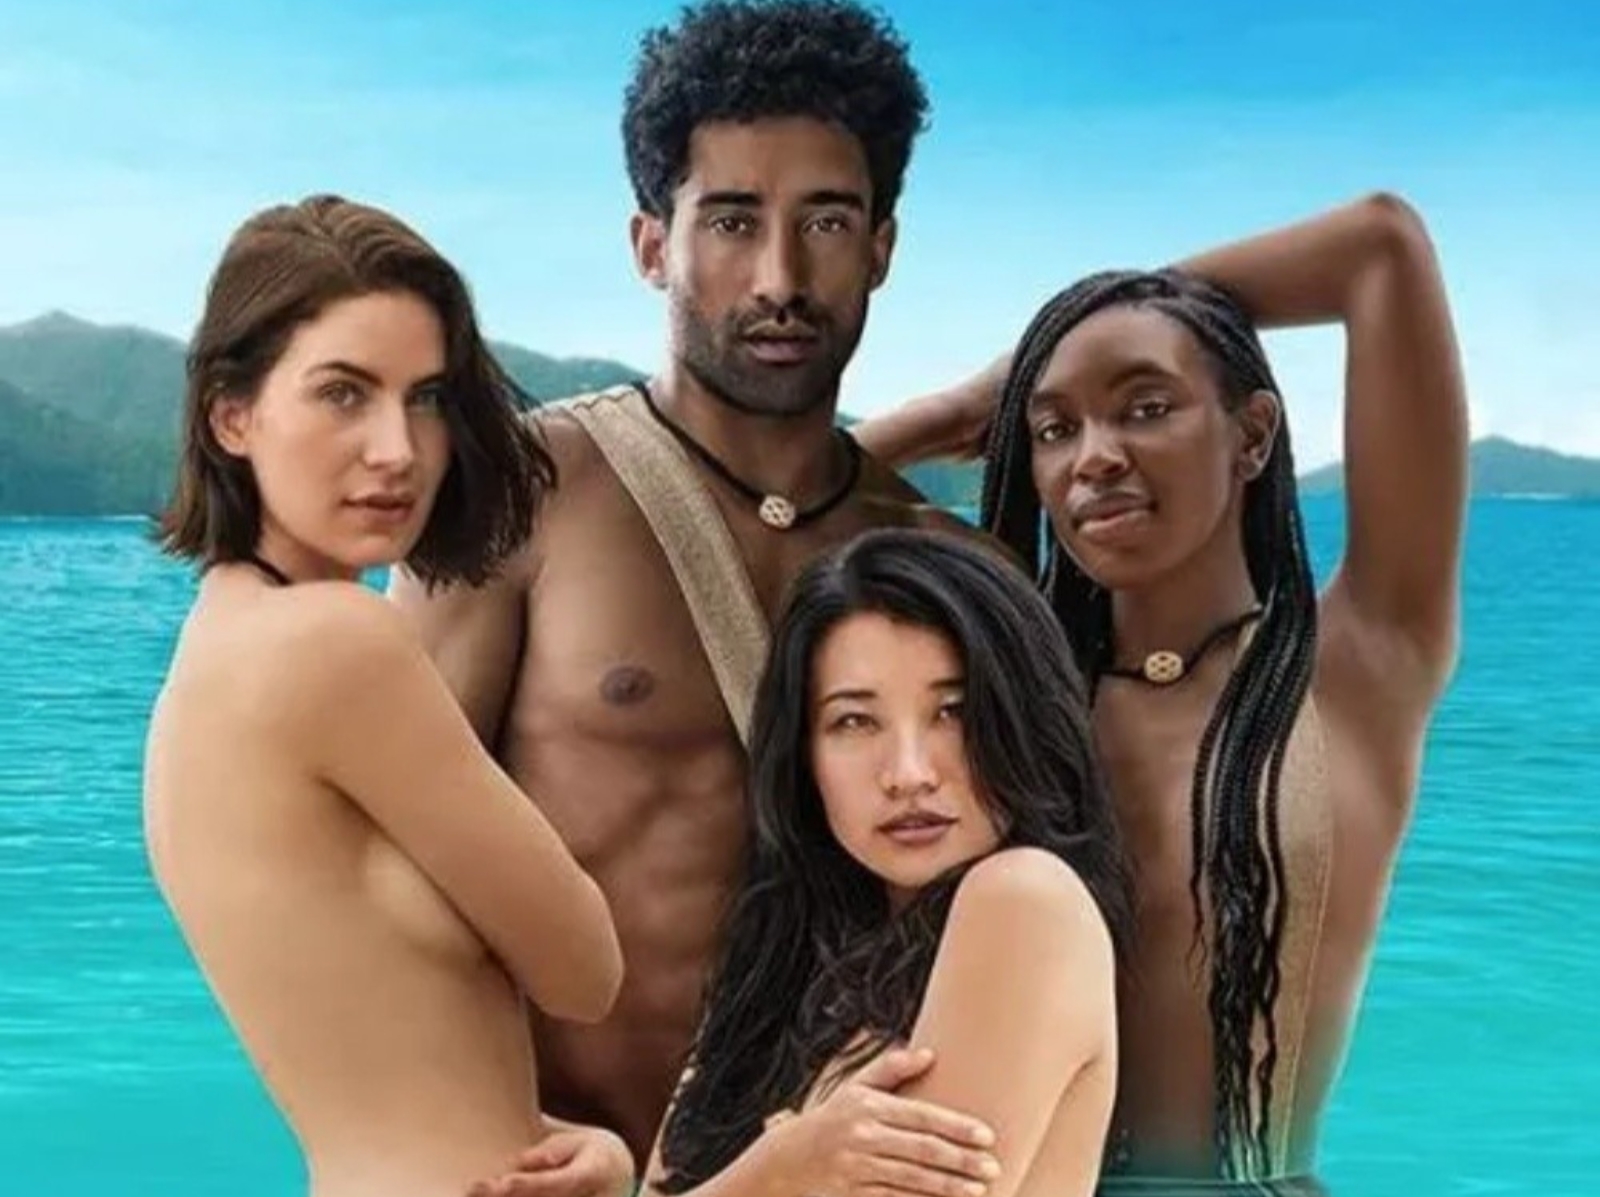 Discovery 推出《裸身求愛 21 天》超火辣實境秀節目，16 位參賽者都要「全裸」出演！